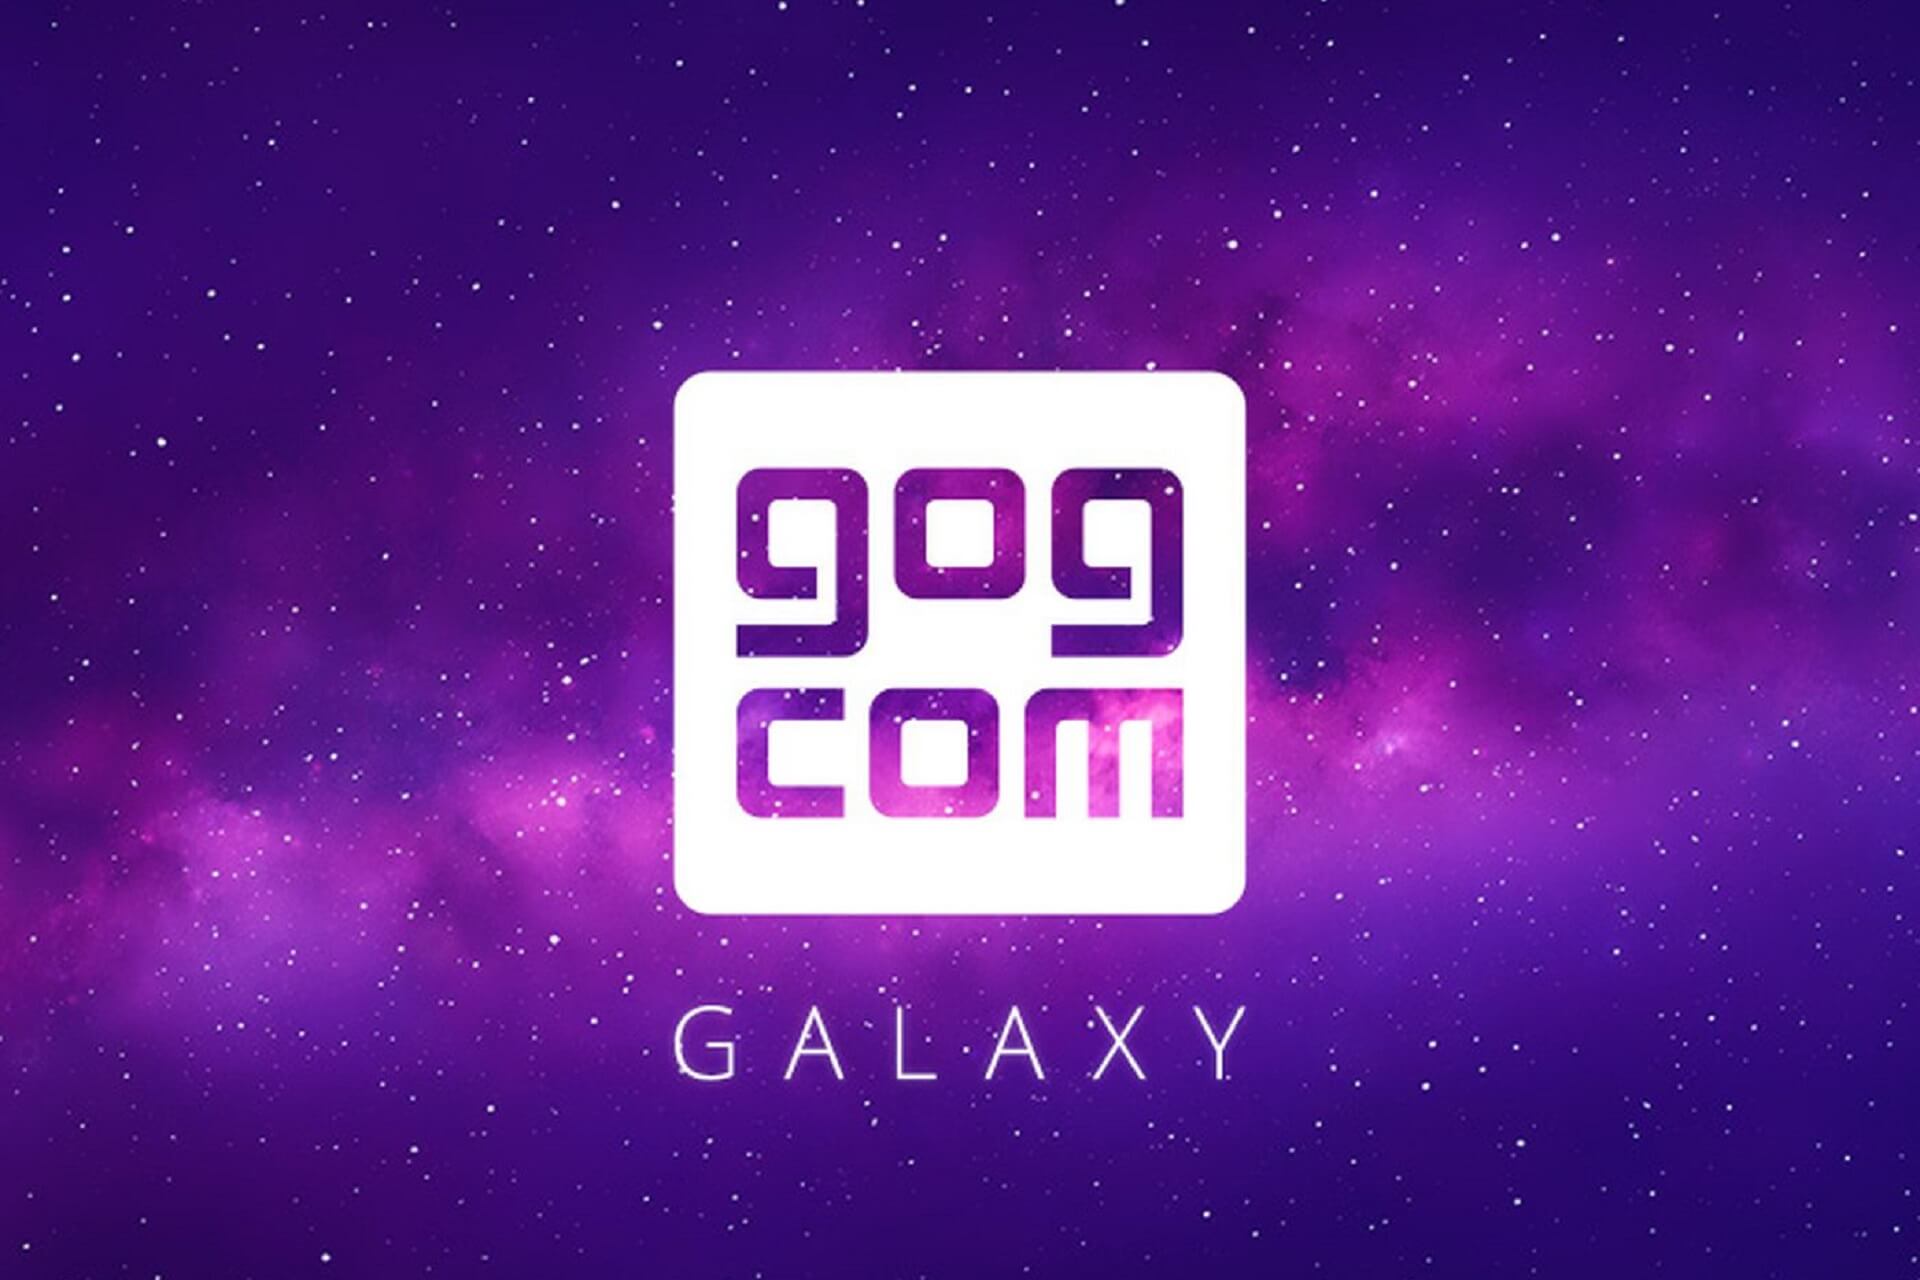 download gog galaxy